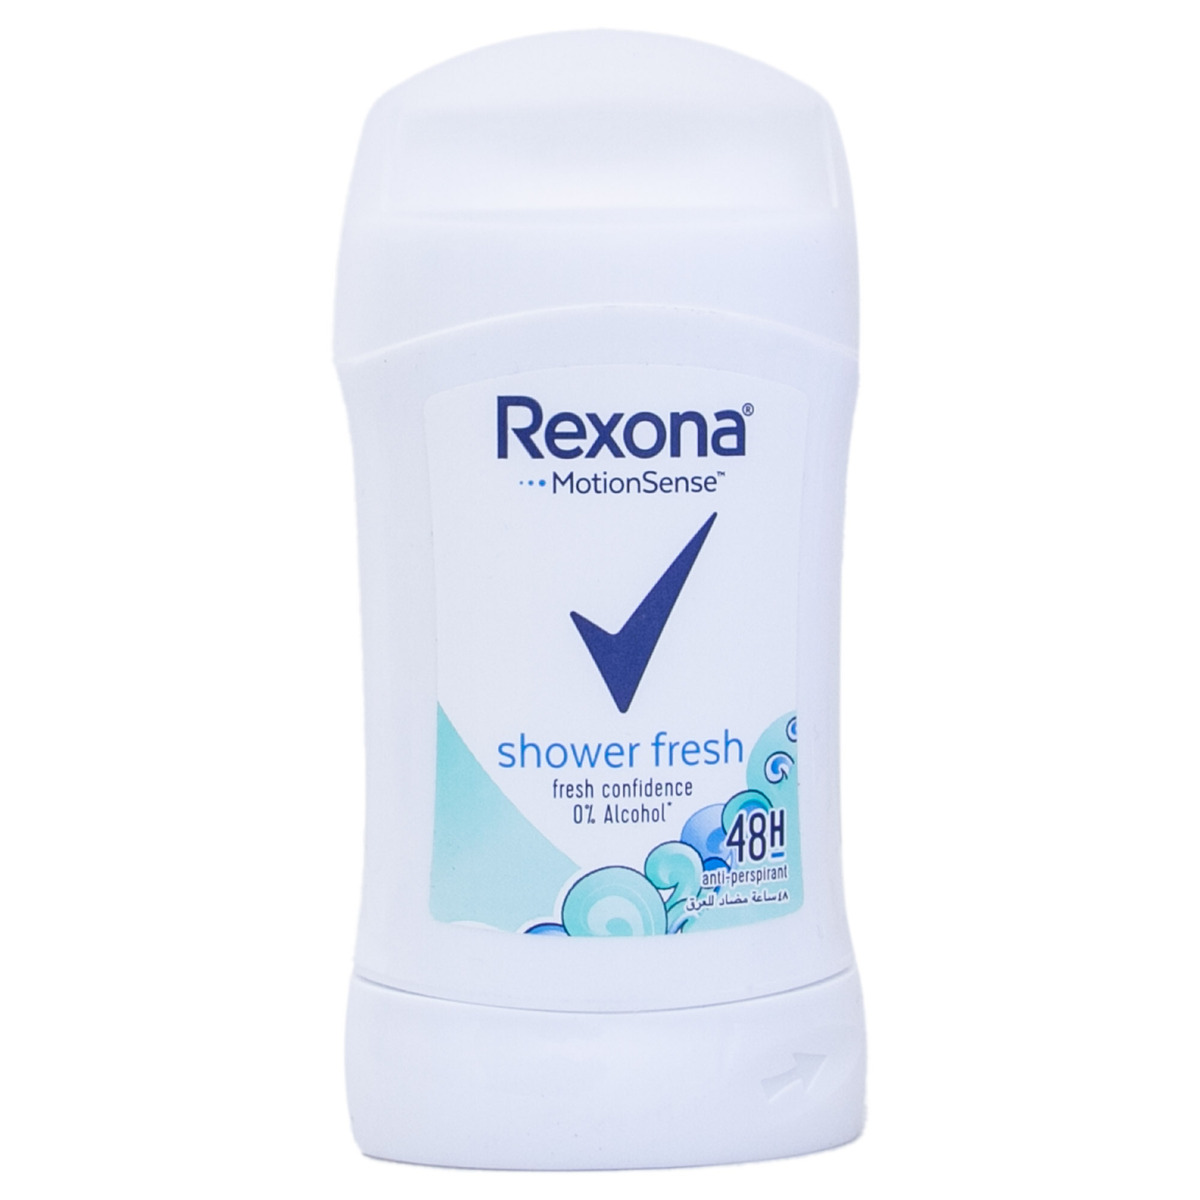 Rexona Deodorant Stick For Women Shower Fresh 40g | Antiperspirant ...